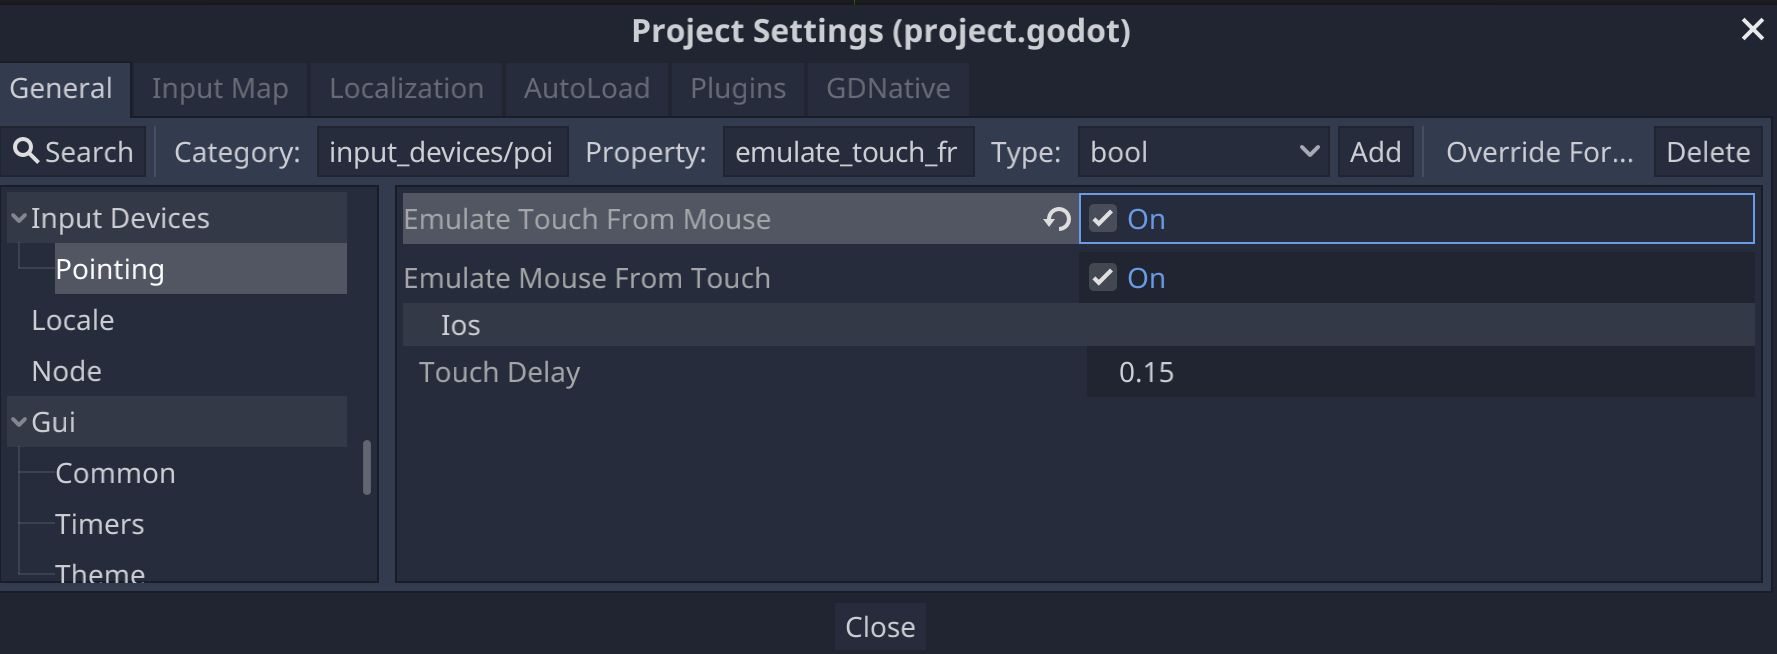 إعدادات مشروع Godot لأجهزة الإدخال